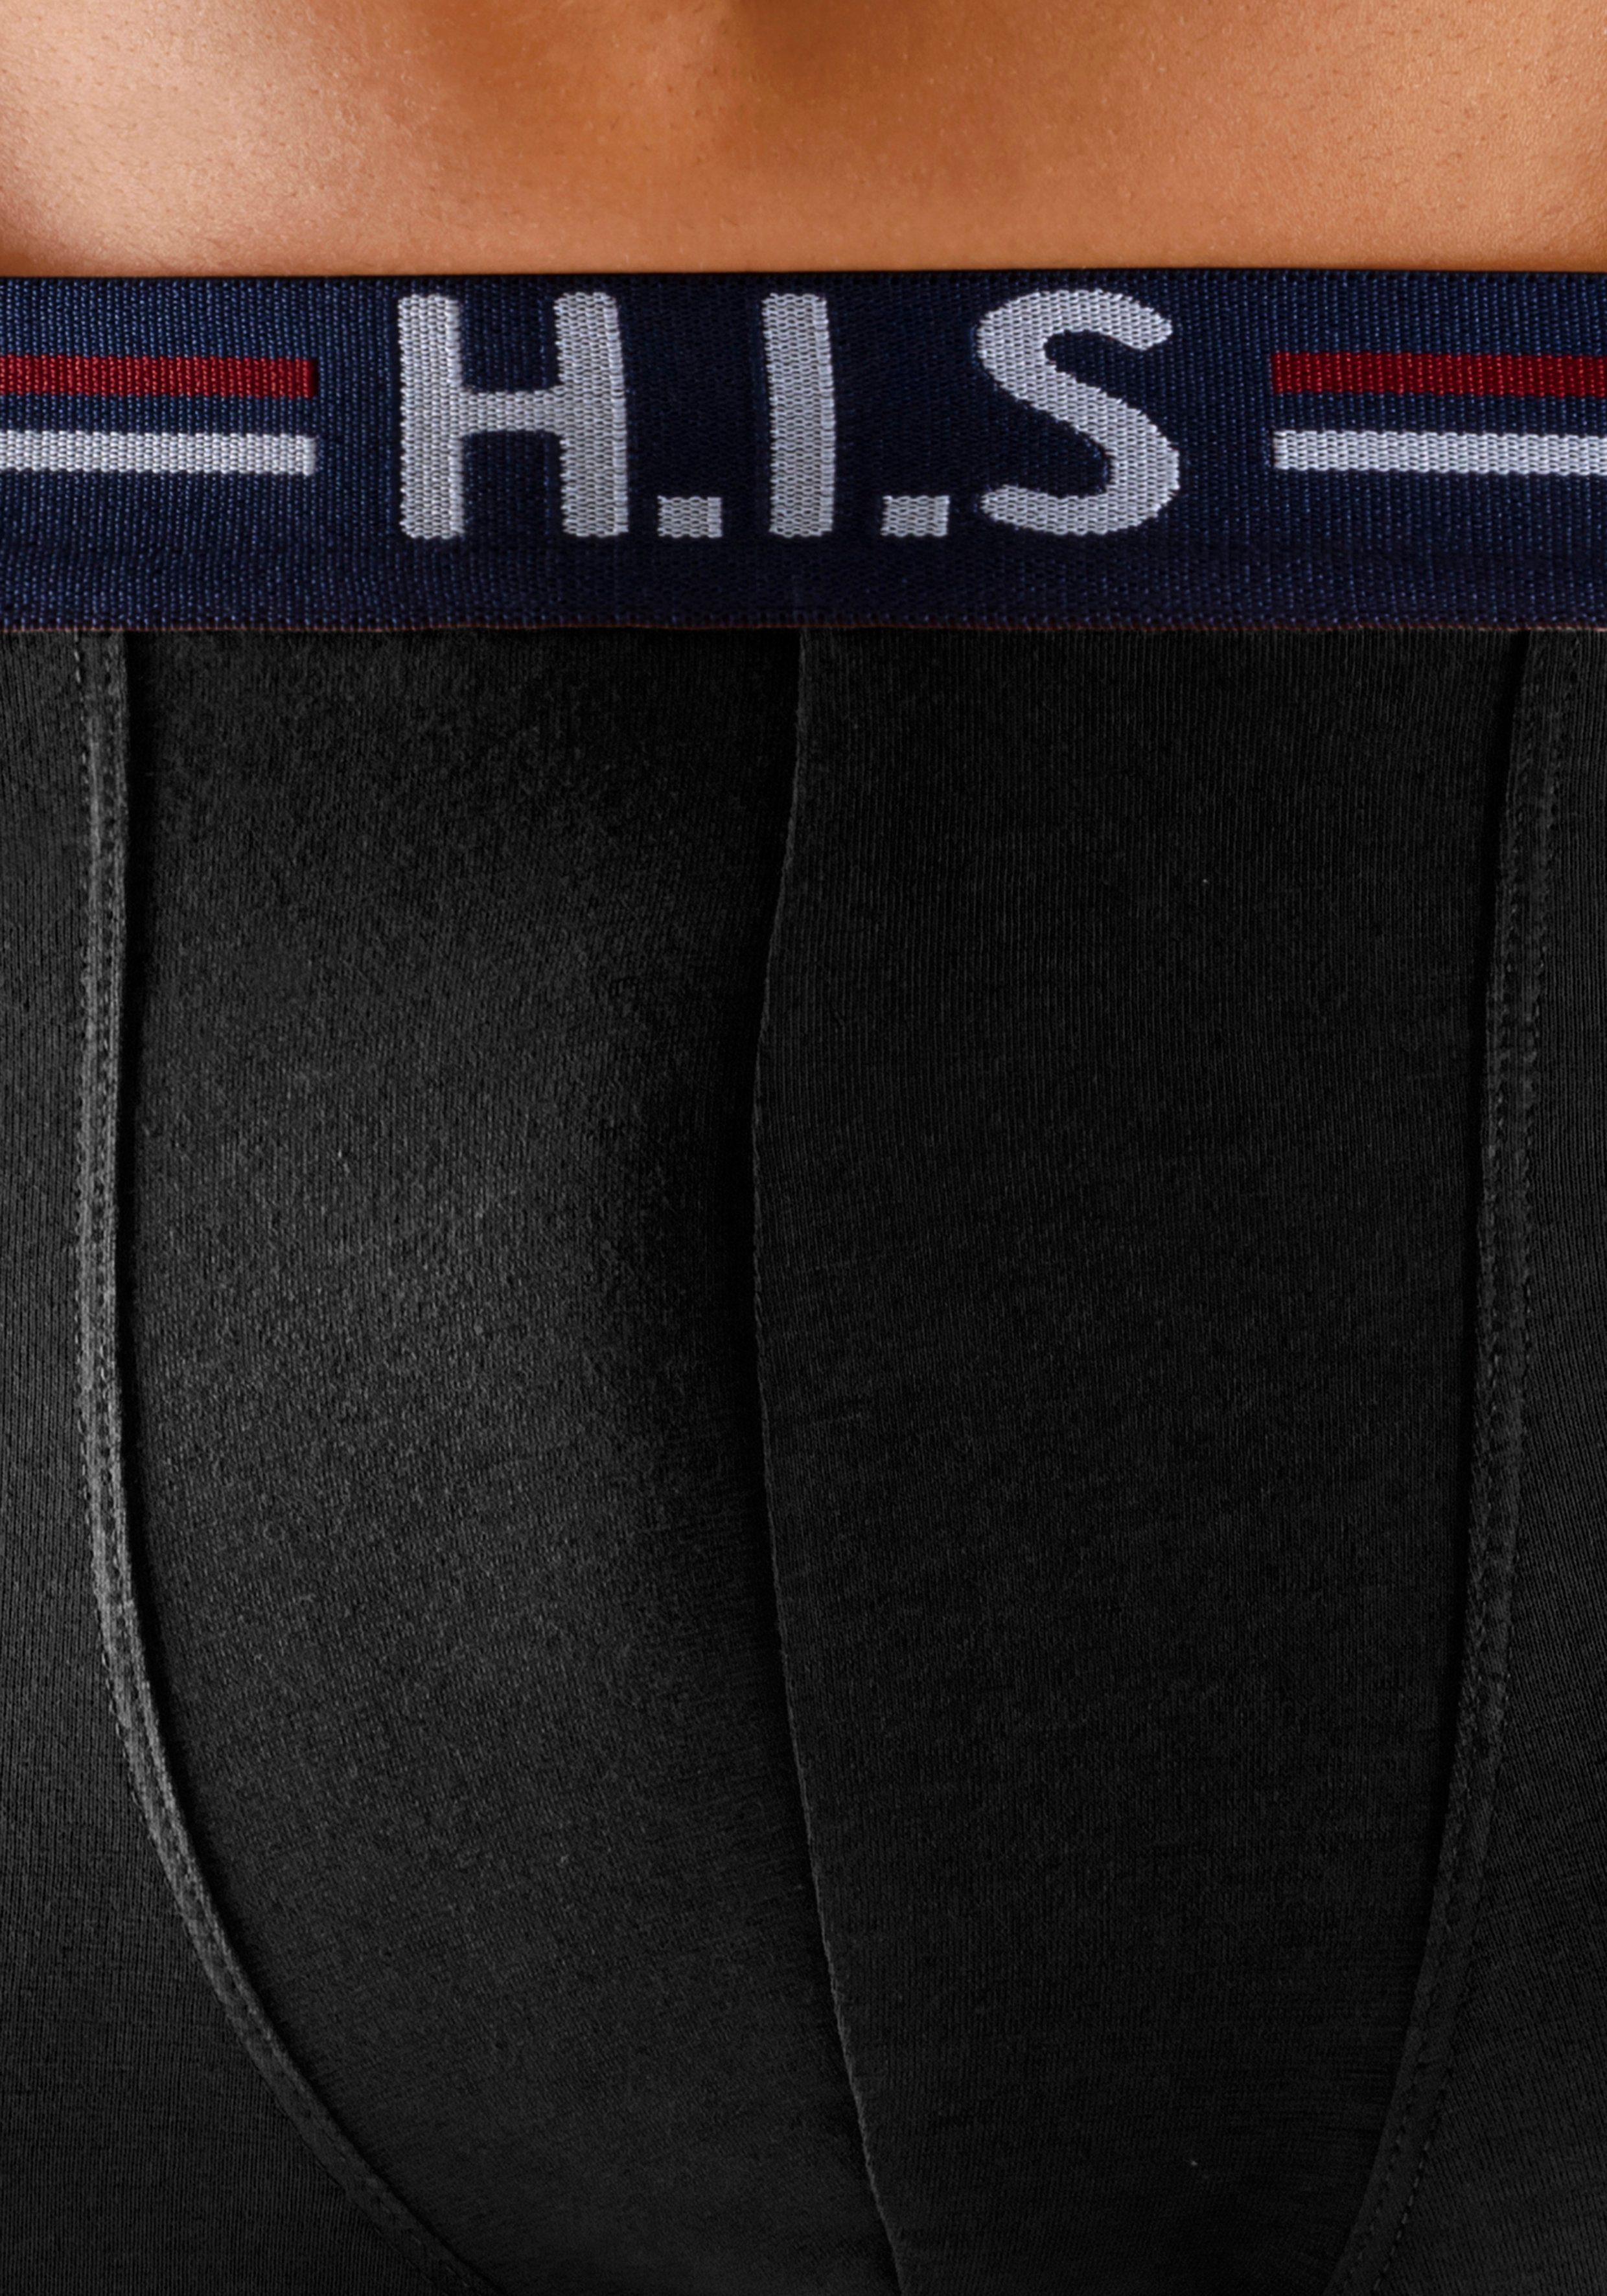 5-St) in Markenlogo im Boxershorts und Hipster-Form mit H.I.S Streifen (Packung, schwarz Bund